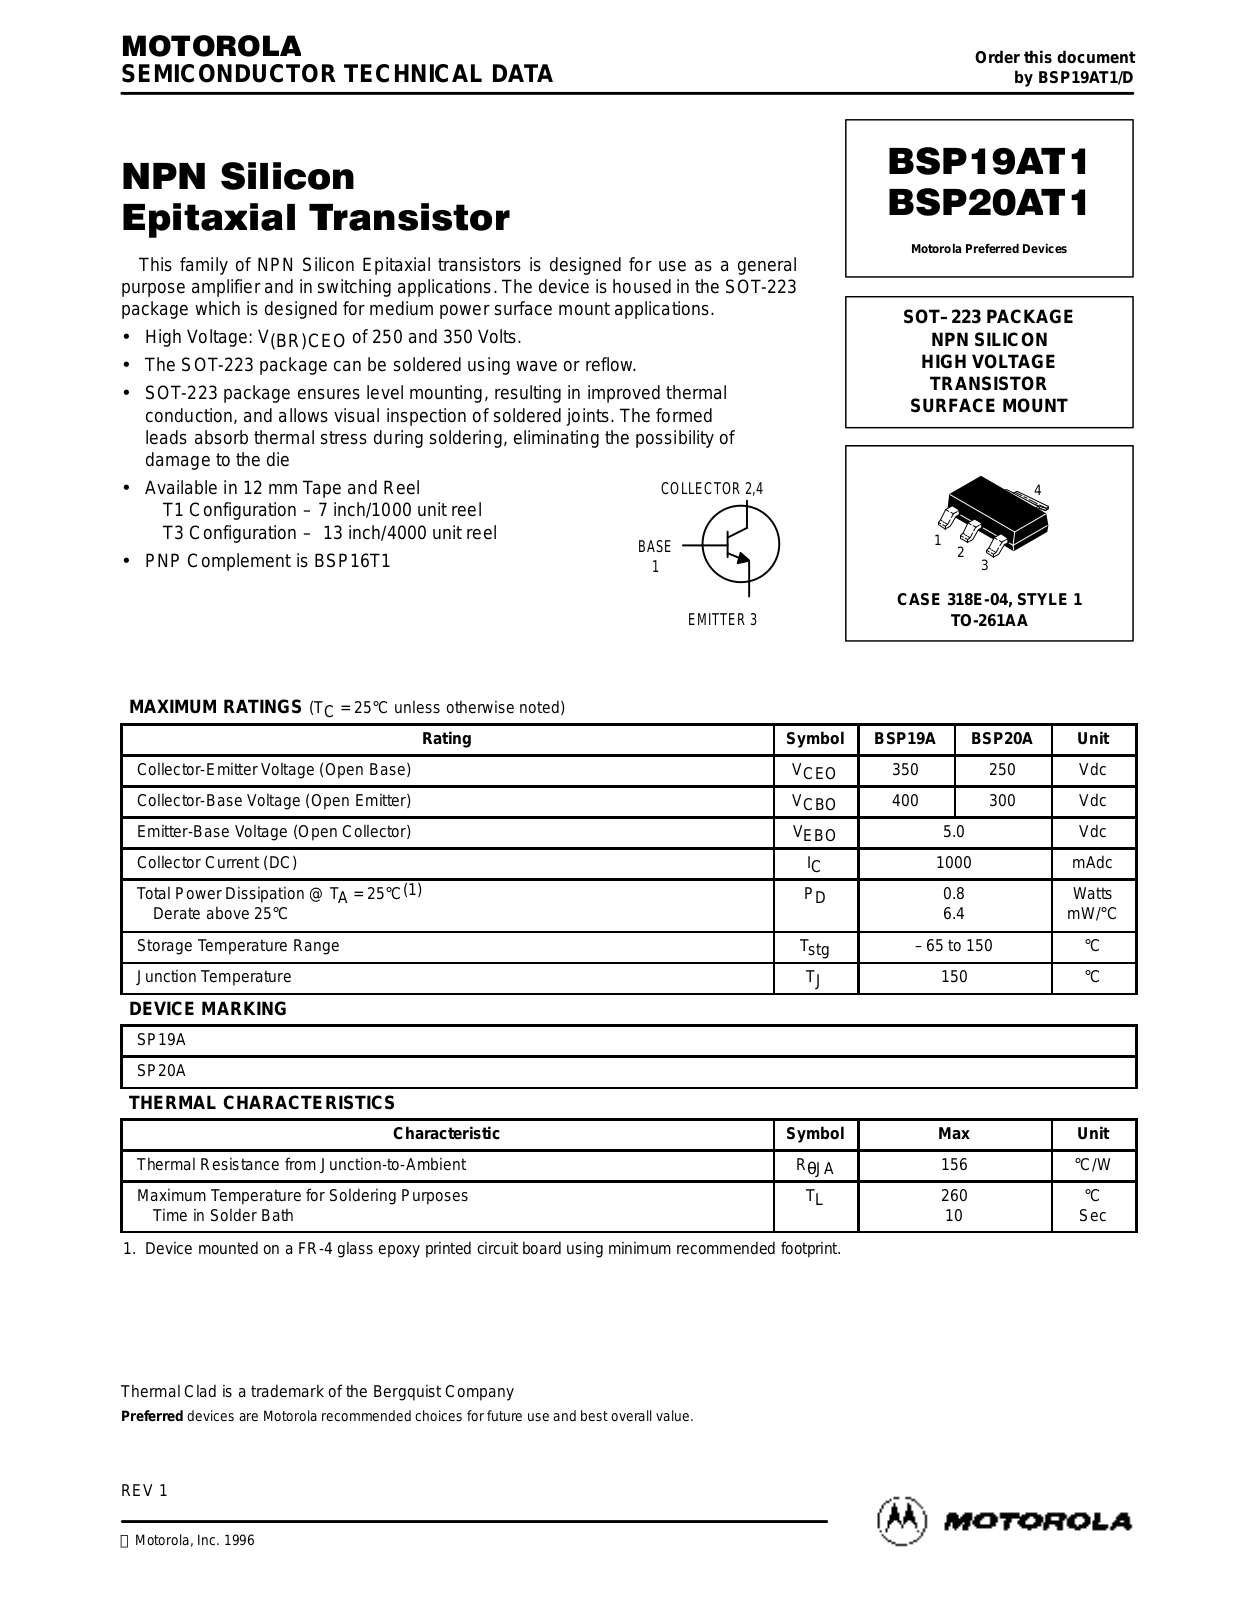 Motorola BSP20AT1, BSP19AT1 Datasheet